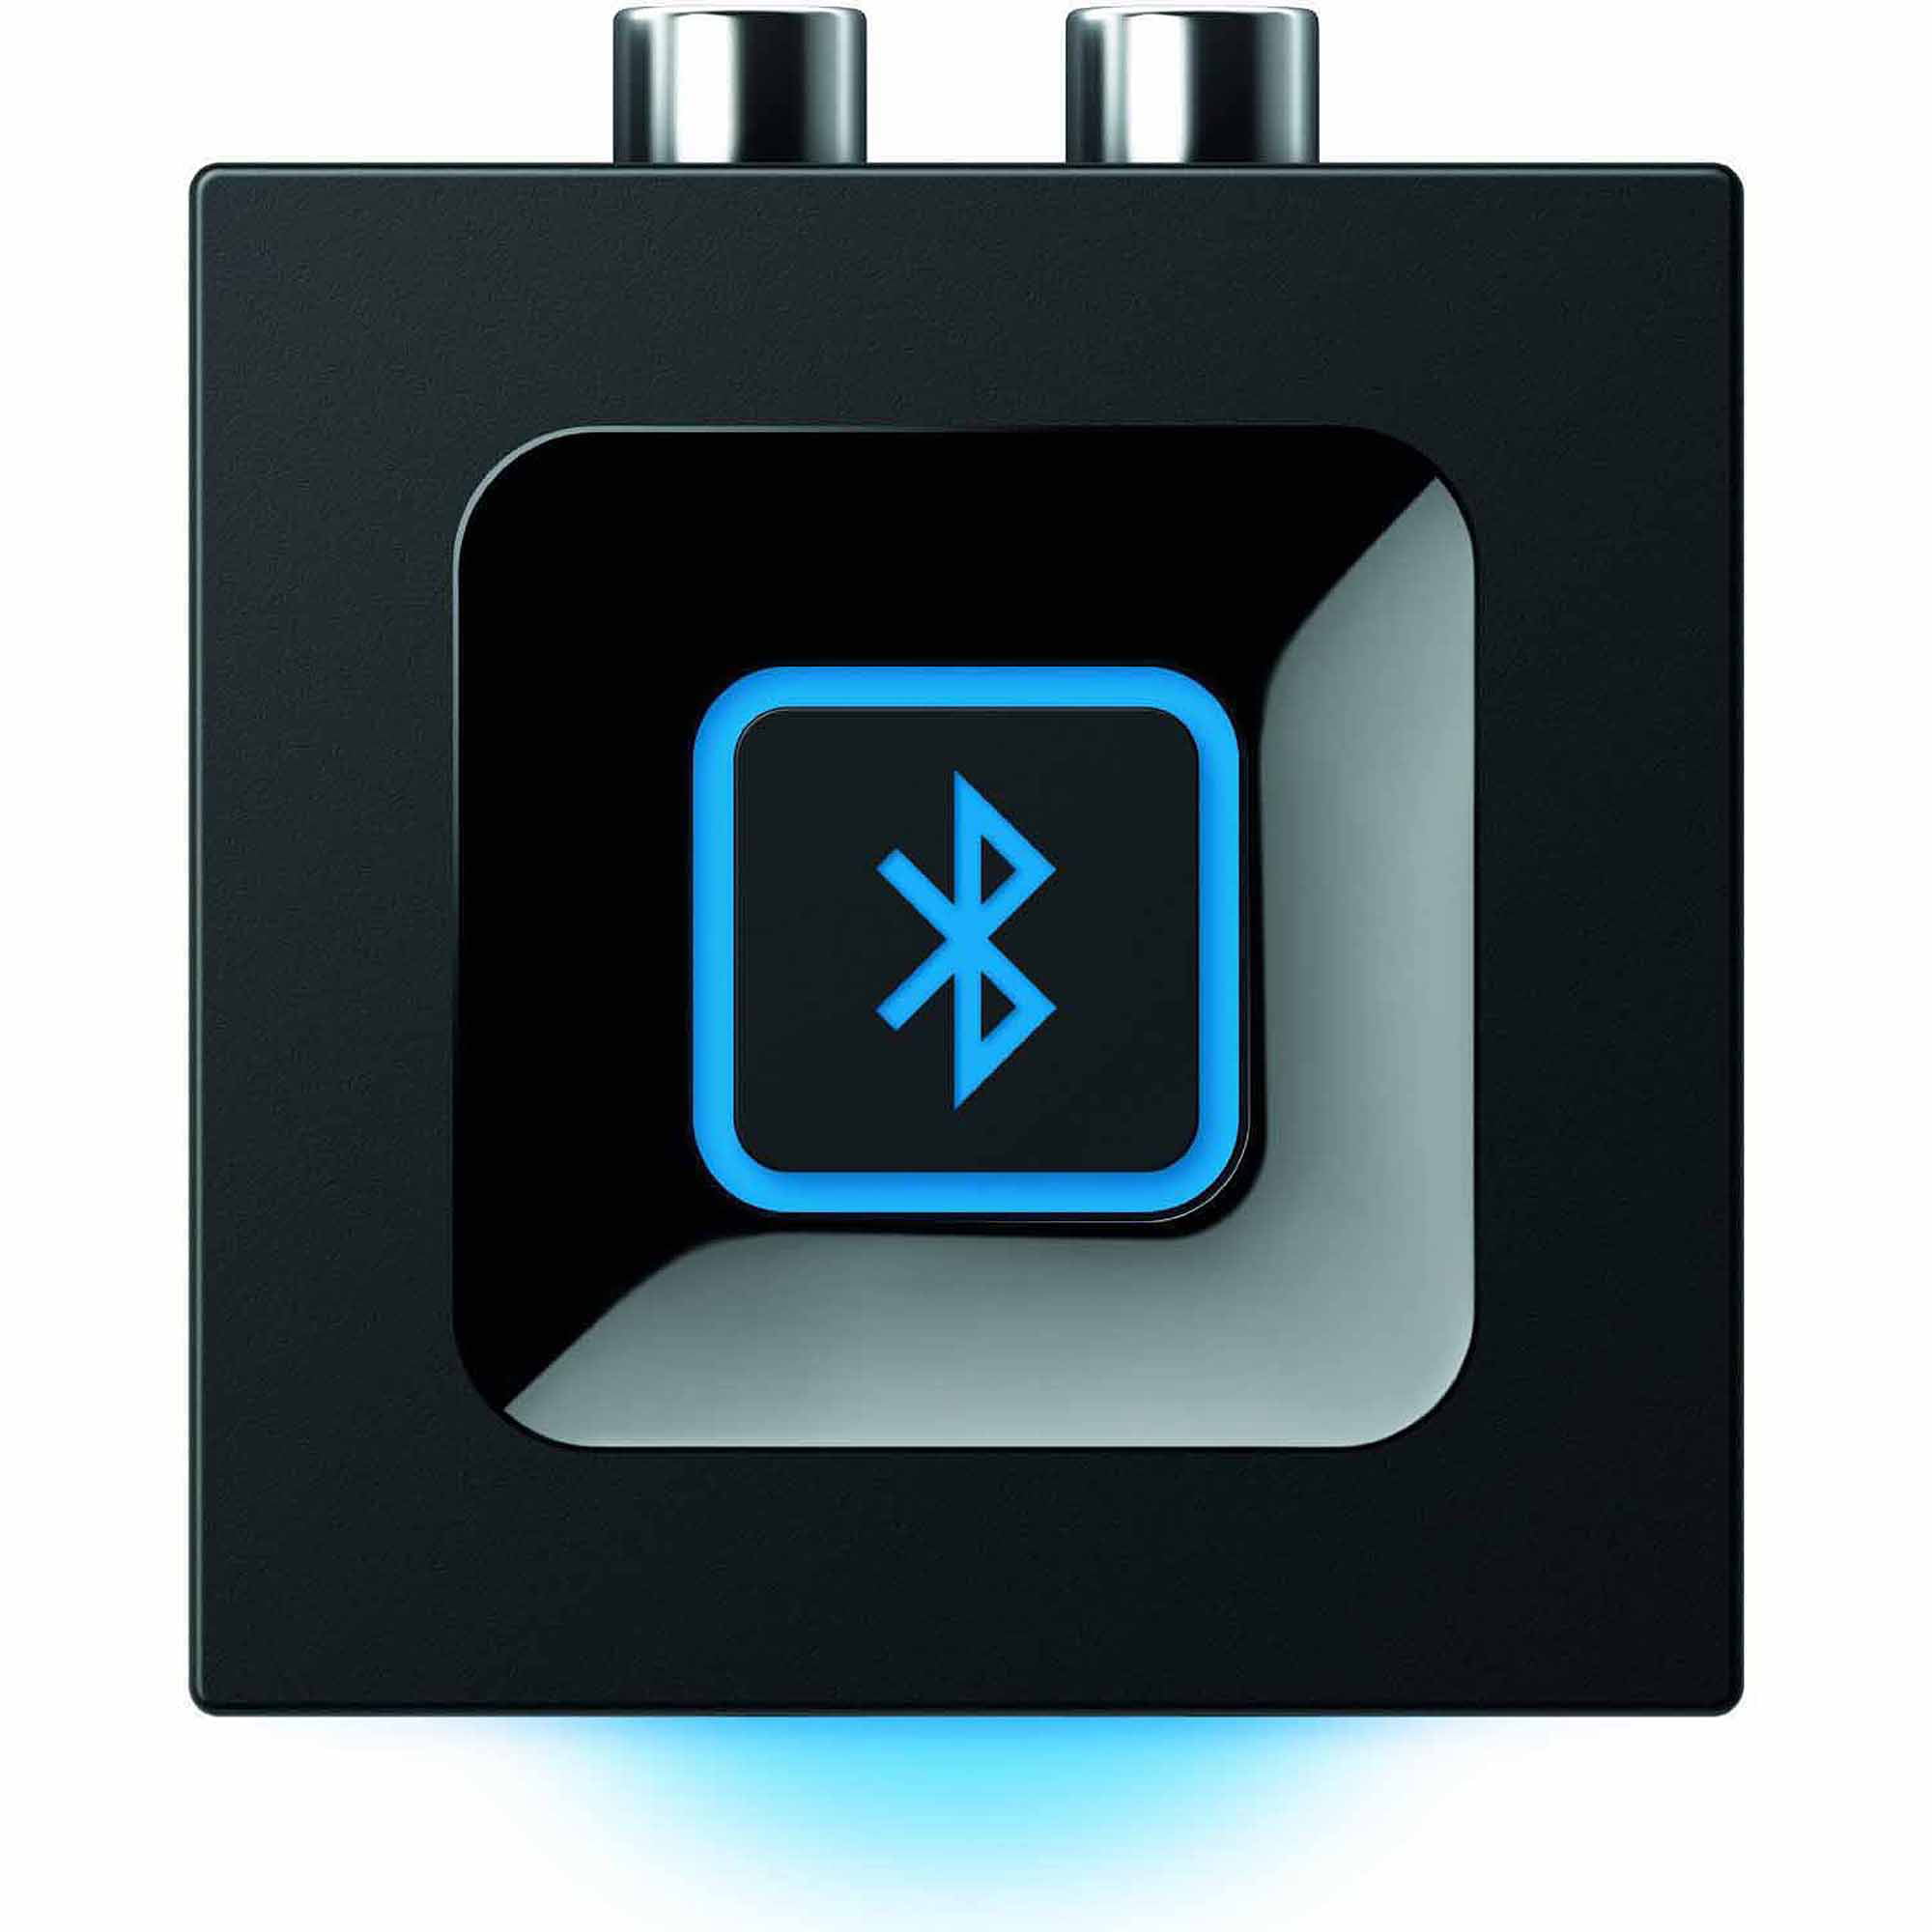 Bluetooth Audio Receiver - Walmart.com